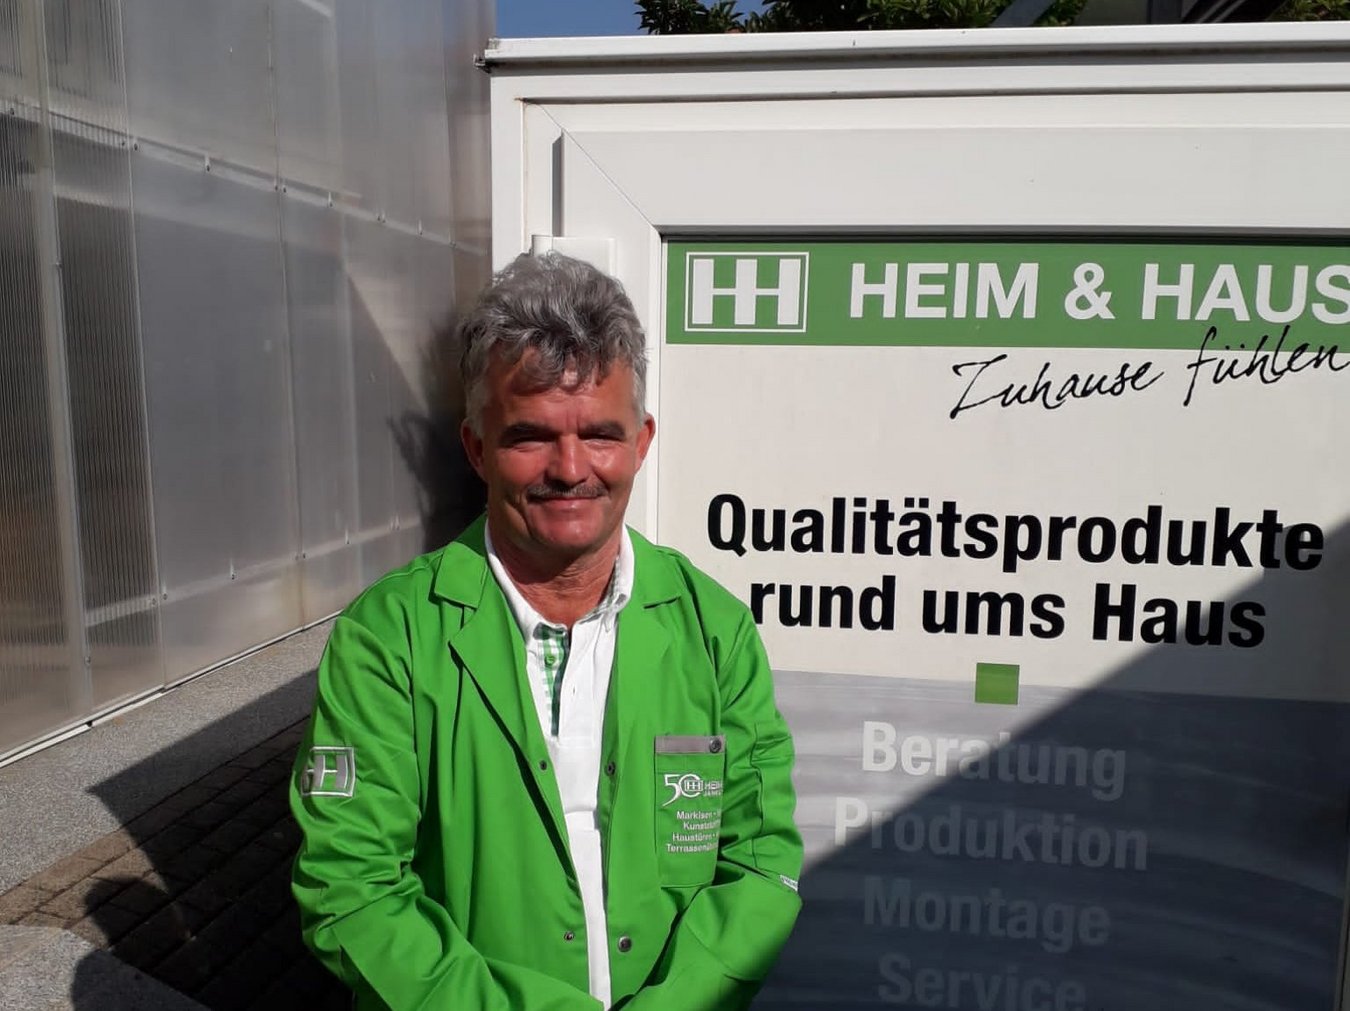 HEIM & HAUS Fachberater Herr Frank aus der Verkaufsleitung Würzburg mit grünem Mantel im Portrait